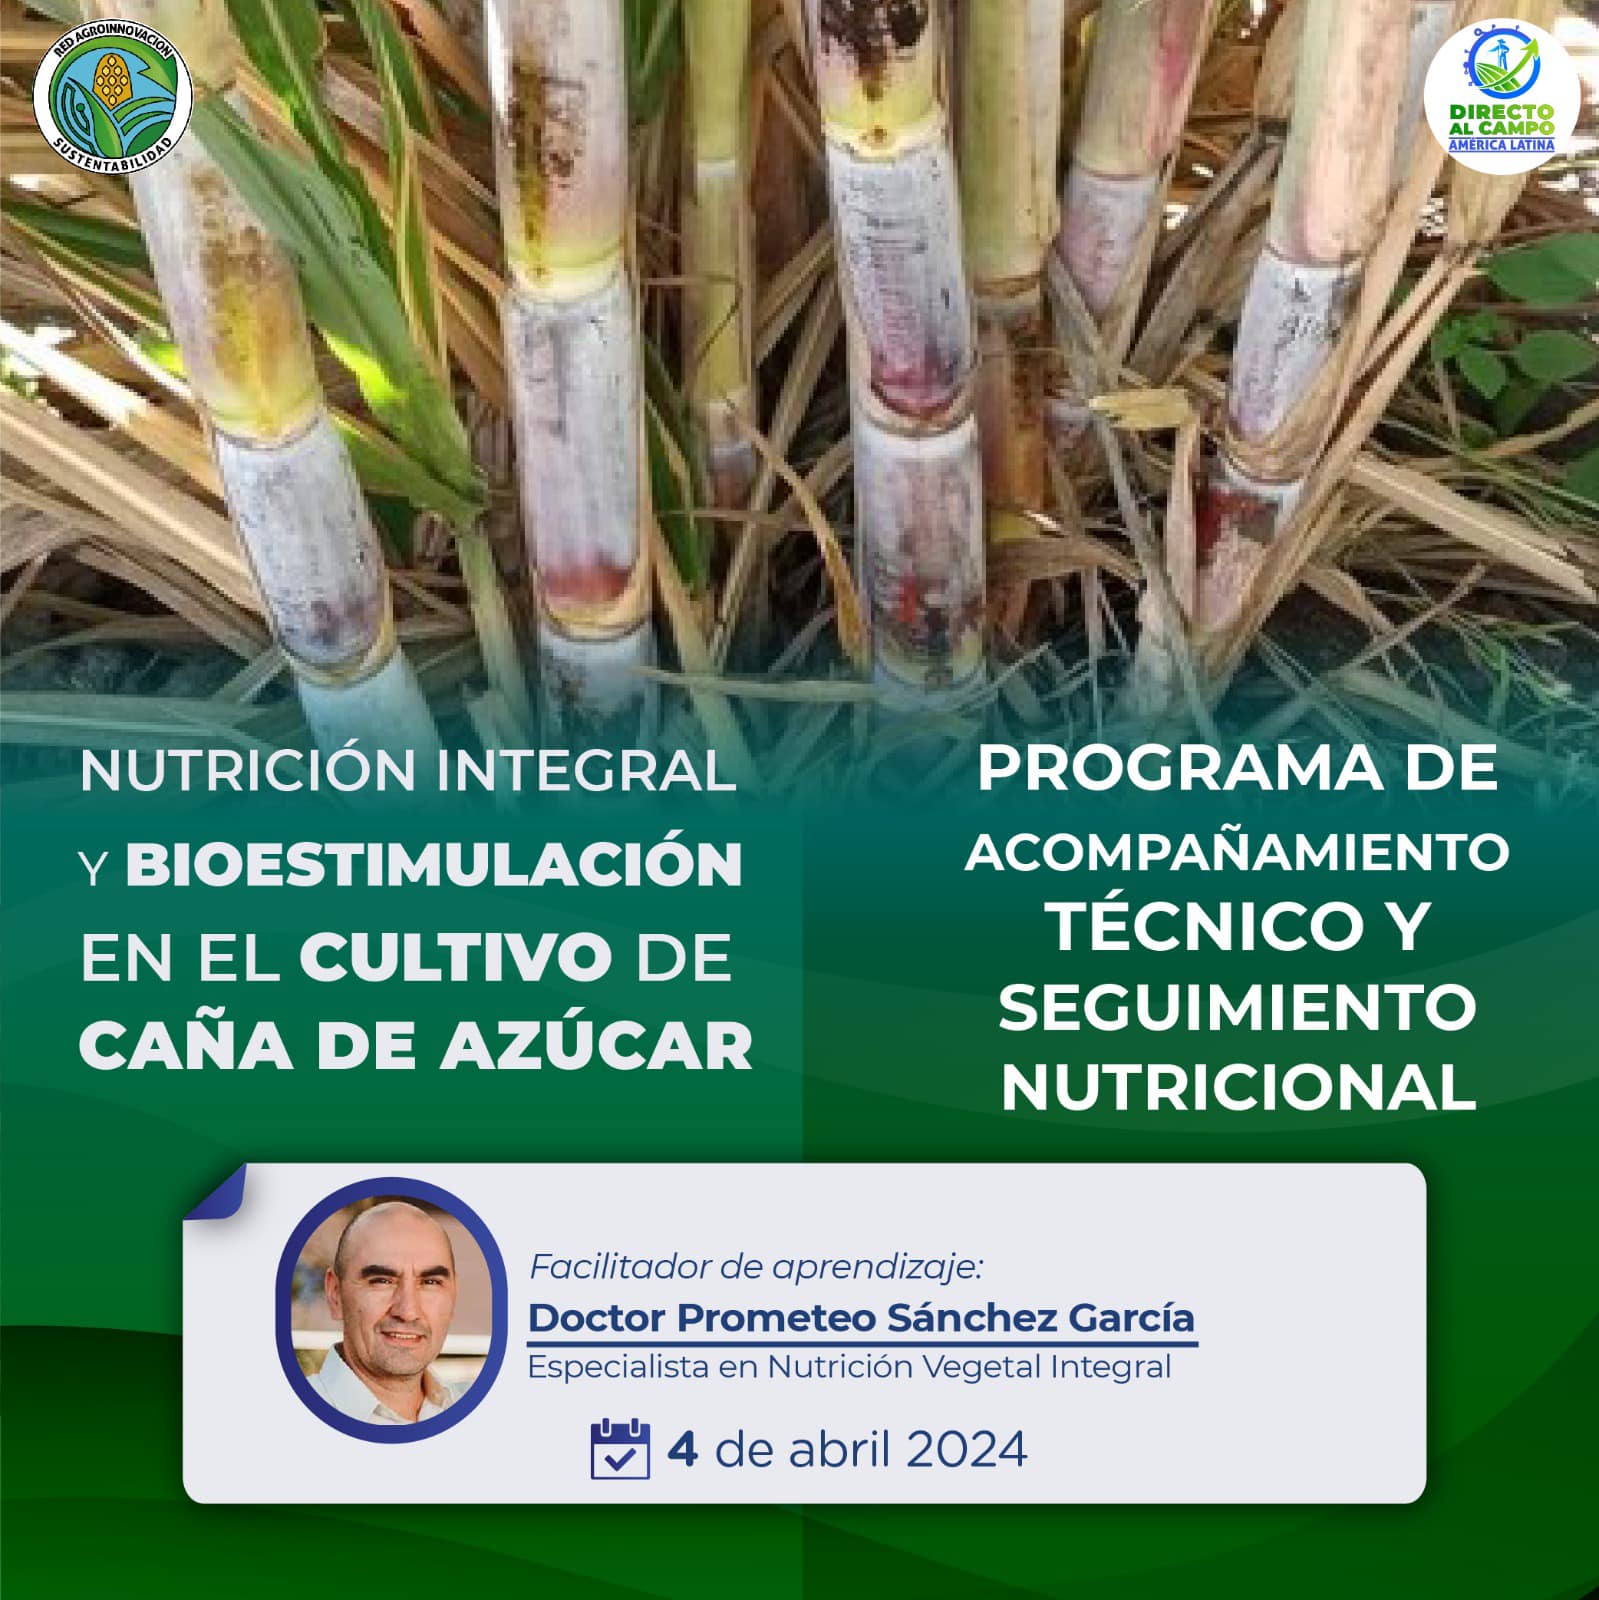 Cultivo de caña de azúcar – Nutrición integral y bioestimulación